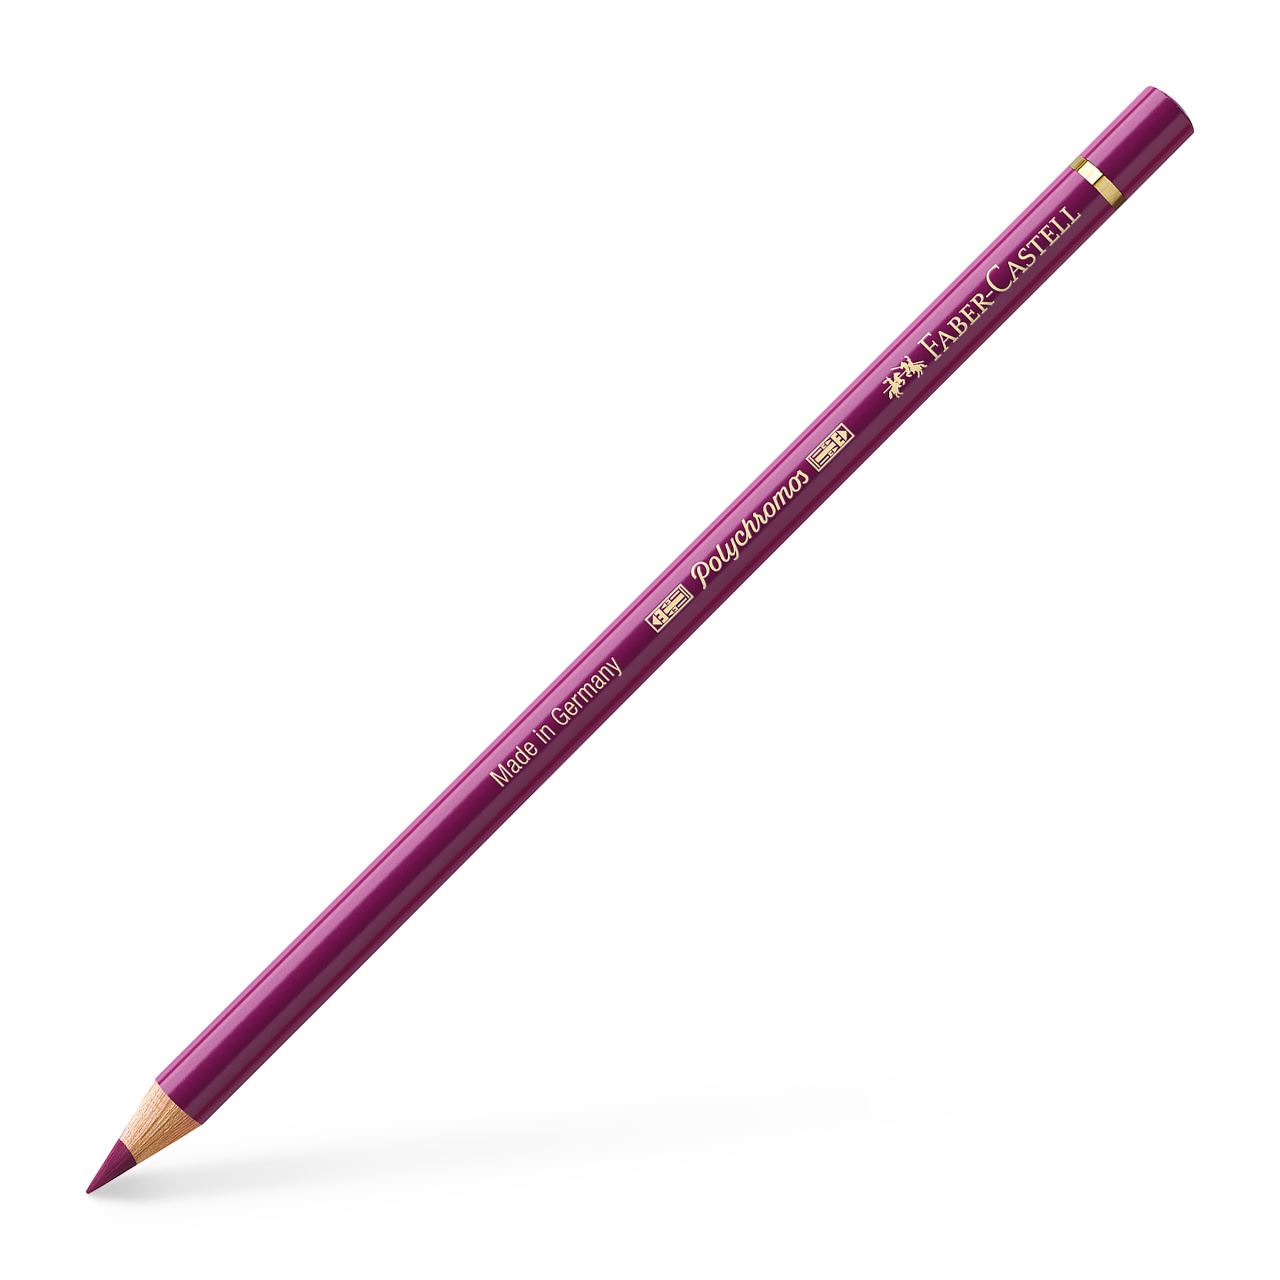 Faber-Castell - Polychromos colour pencil, 133 magenta